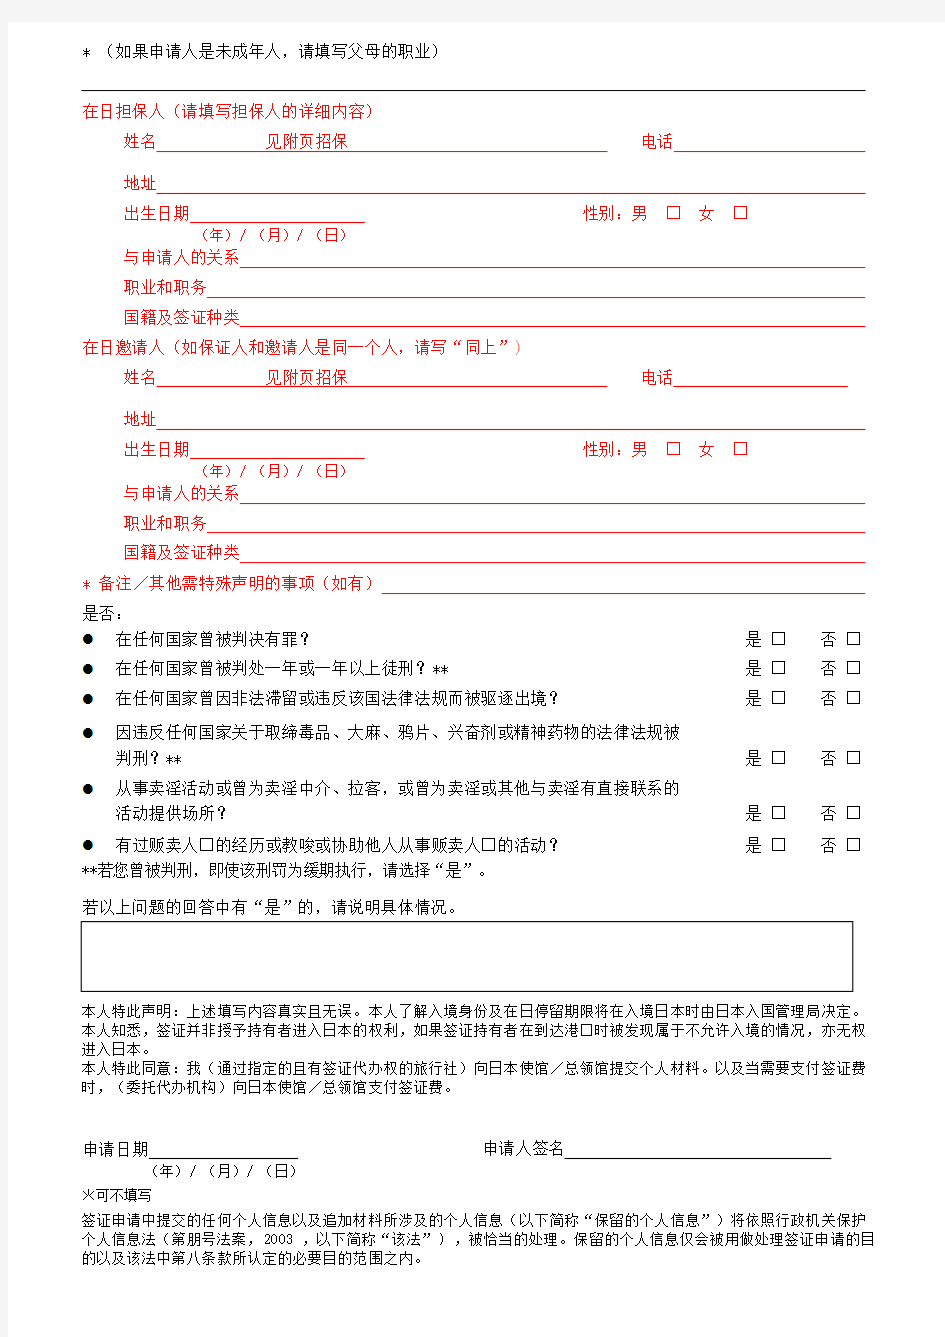 001.日本国签证申请书A4纸正反打印(表格中红色部分空着)